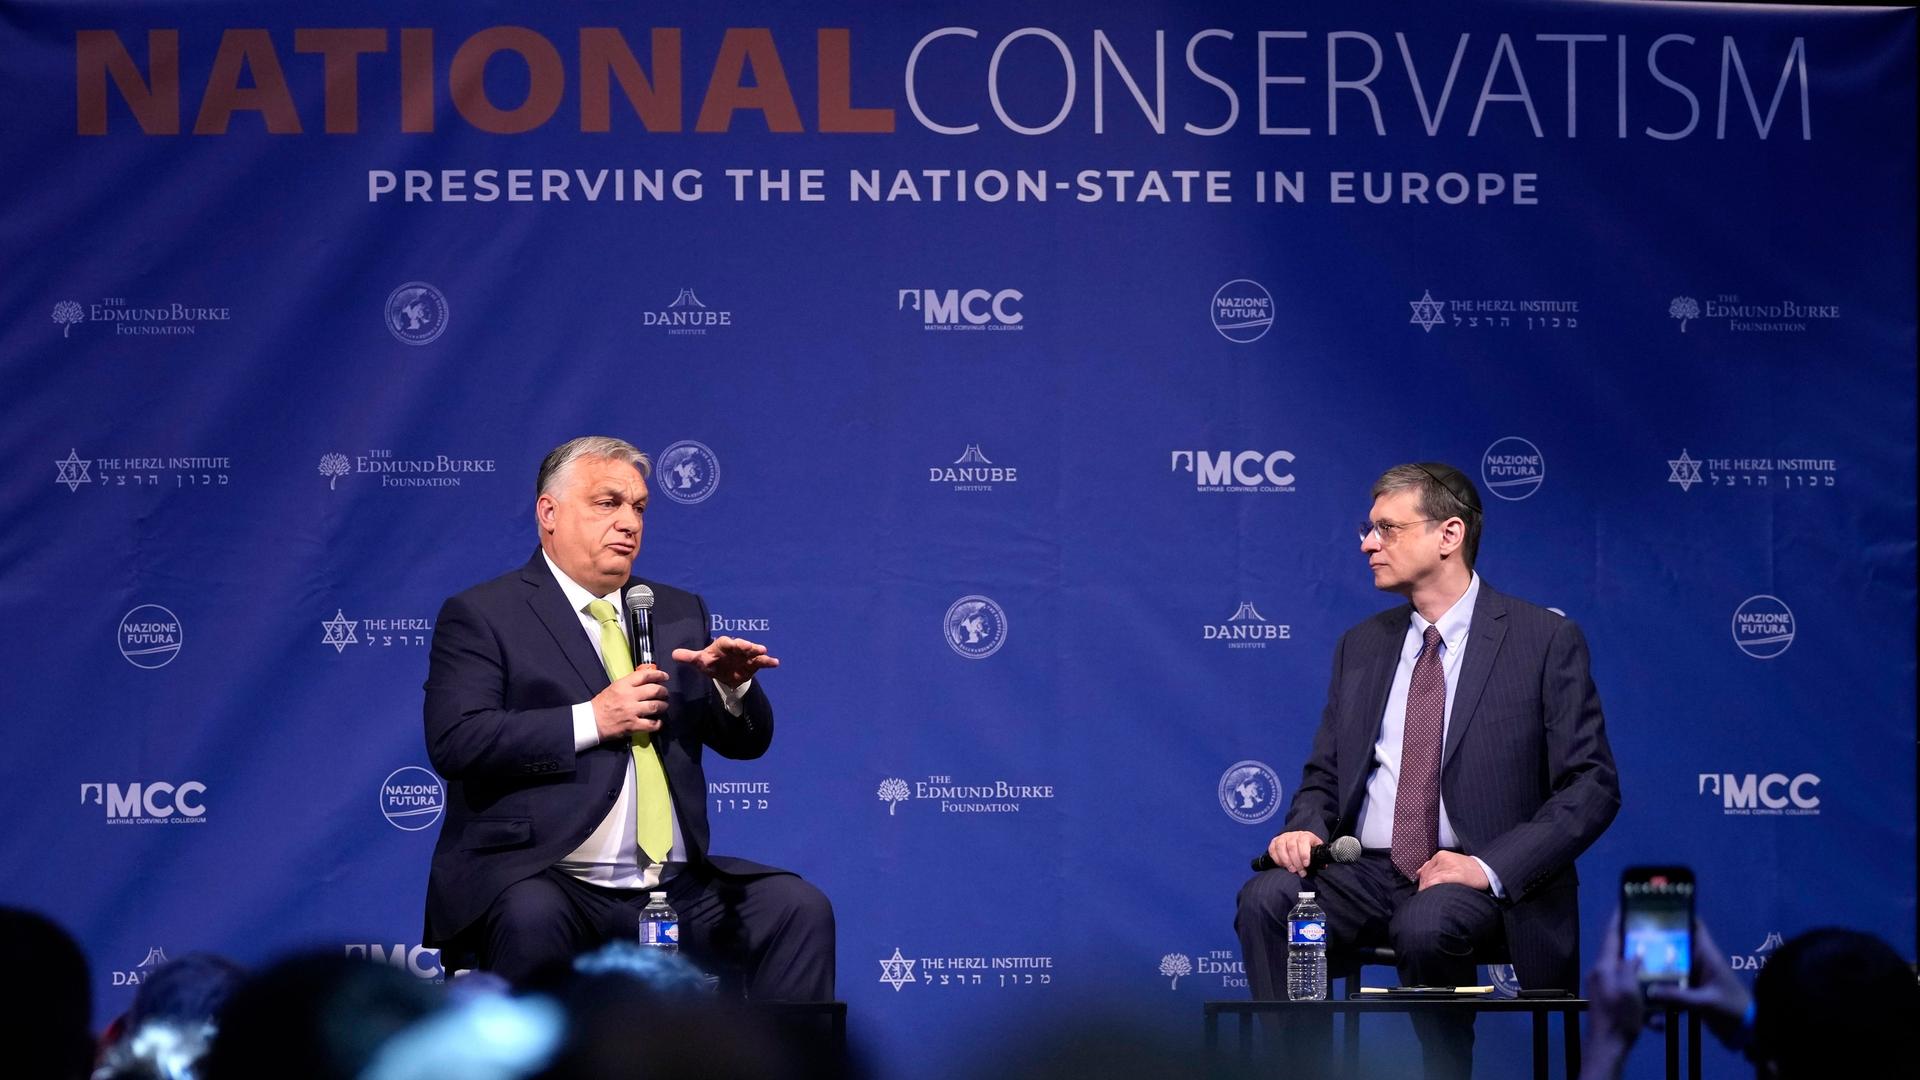 Der ungarische Regierungschef Orban, links, spricht auf der Nationalkonservatismus-Konferenz in Brüssel.